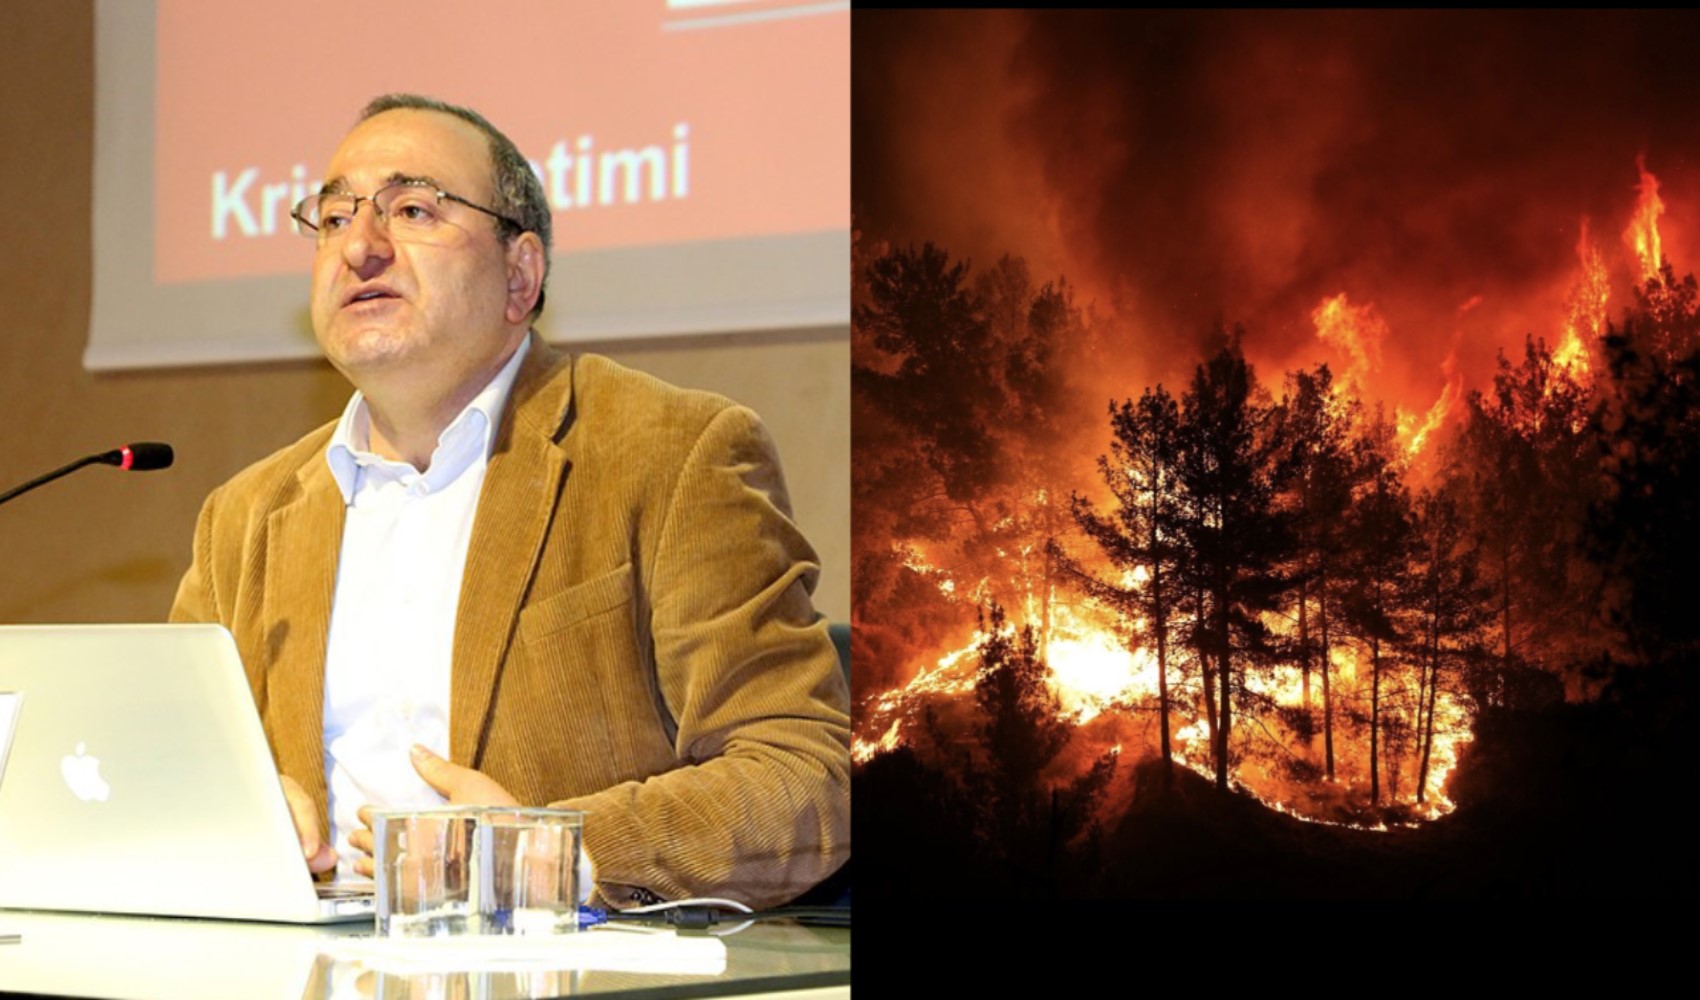 Profesör Kadıoğlu İzmir yangınları için liste paylaşıp Bakan Yumaklı’ya çağrı yaptı: “Suçluları bulun lütfen”